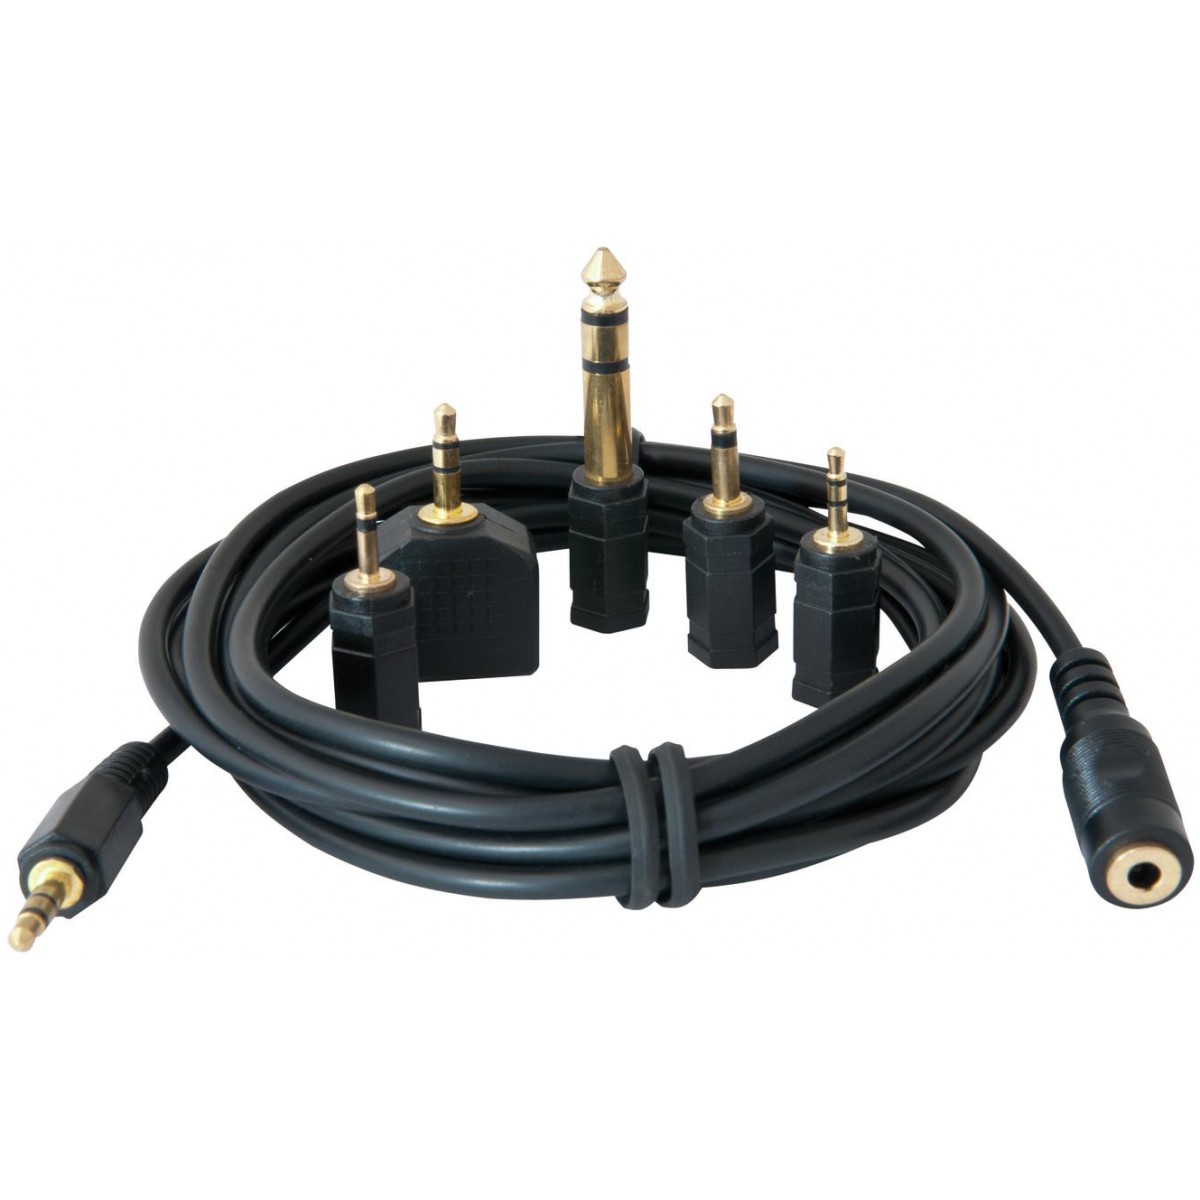 Sluchátkový prodlužovací kabel 3 m + set redukcí